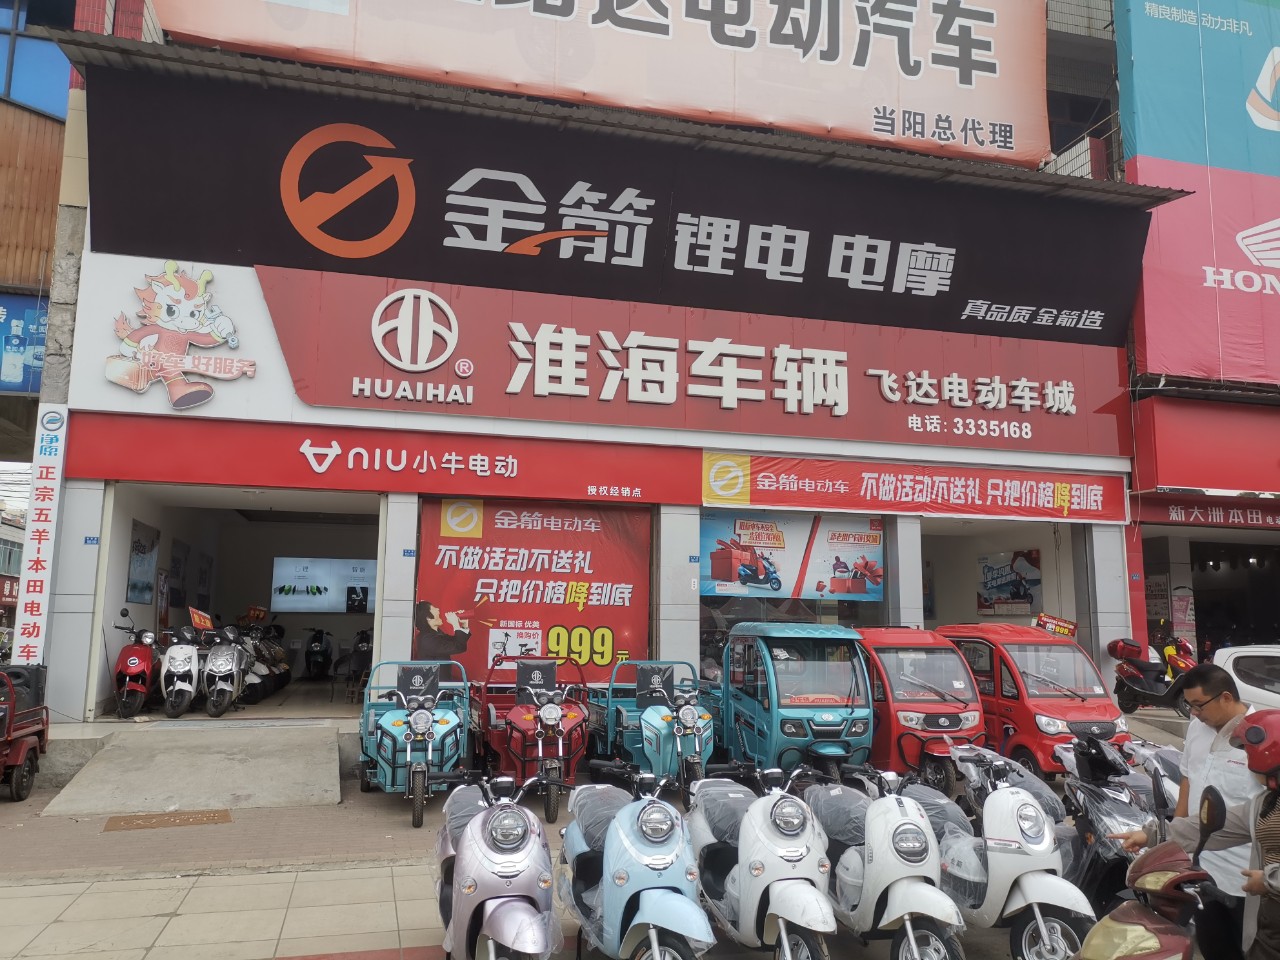 这是黄春雨和淮海品牌在当地电动三轮车行业的真实写照,目前的黄春雨